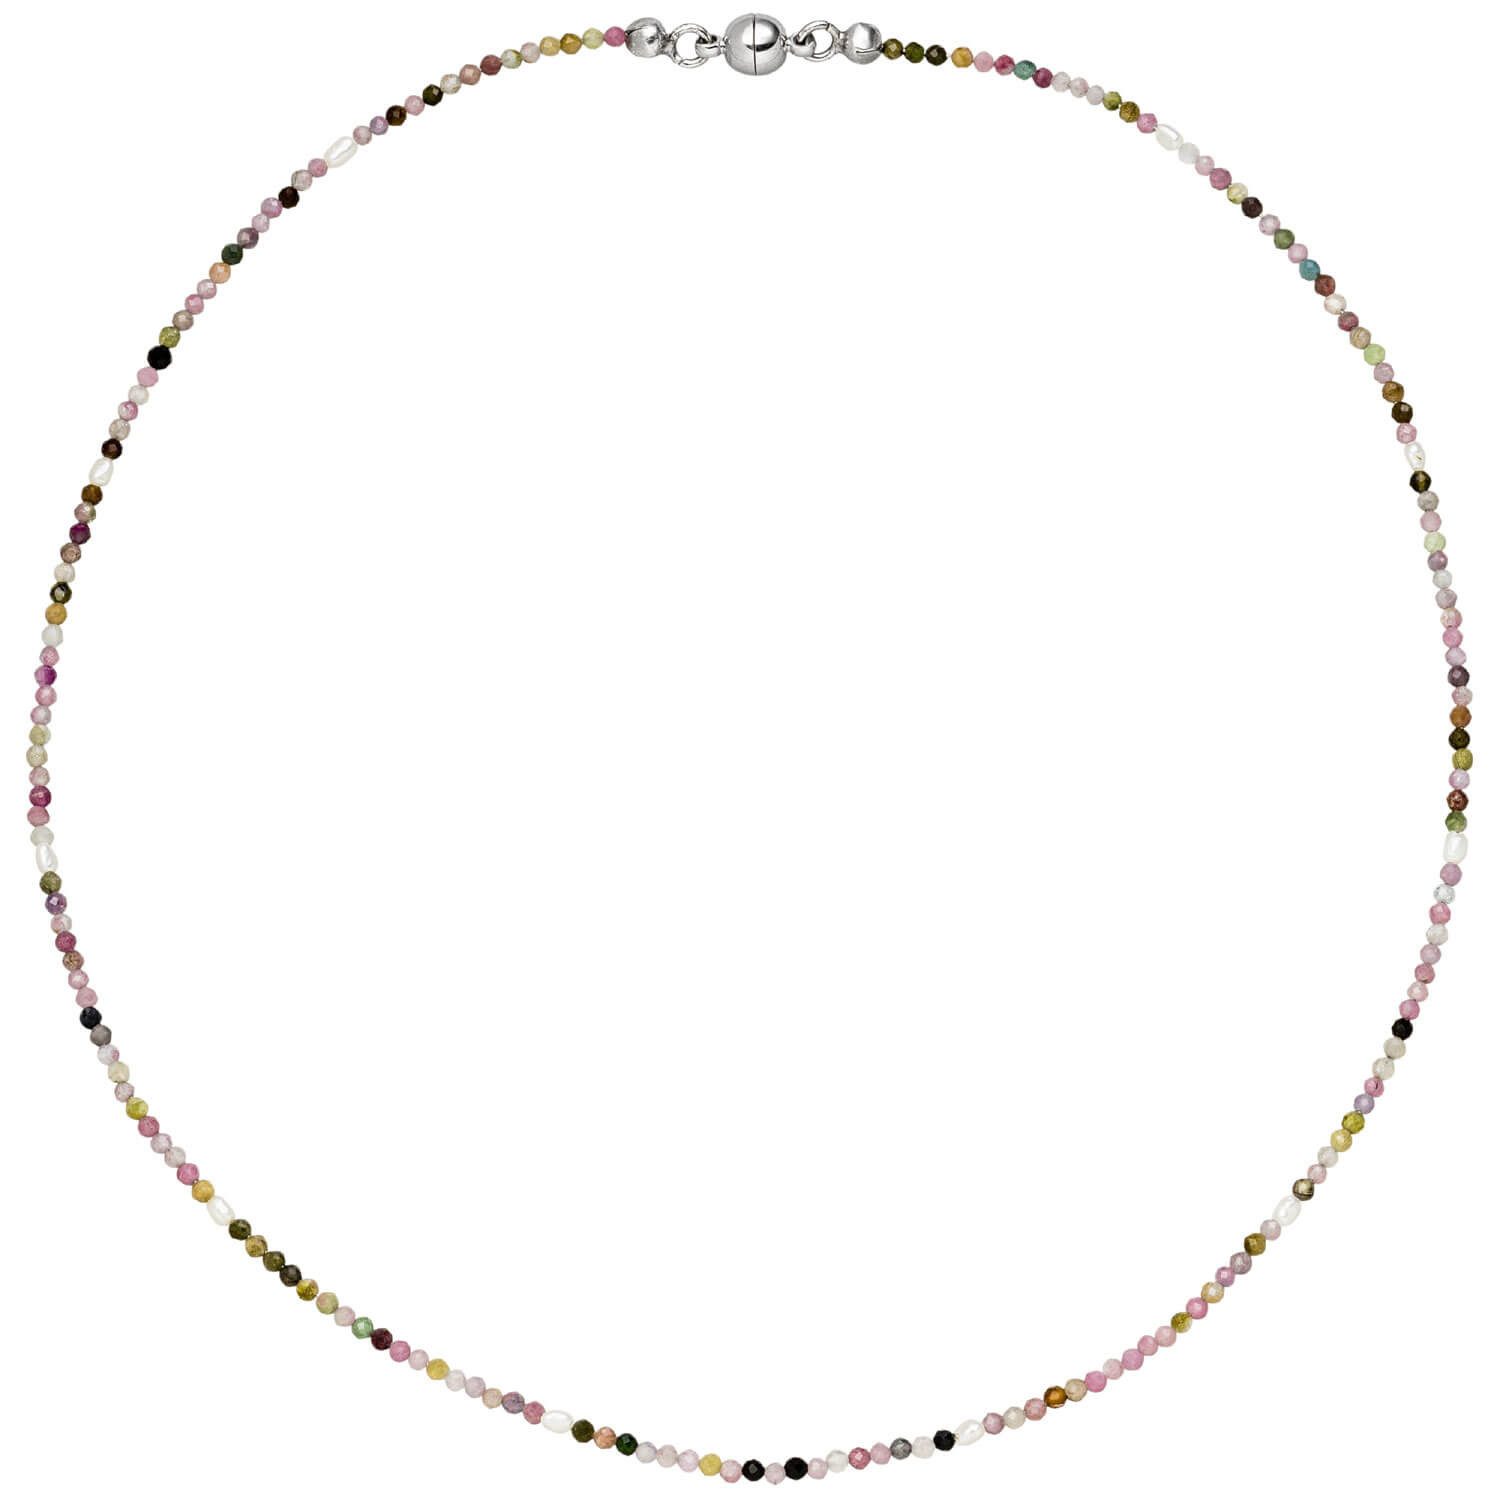 Schmuck Krone Goldkette Kette Turmalin multicolor & Süßwasser Perlen 46cm